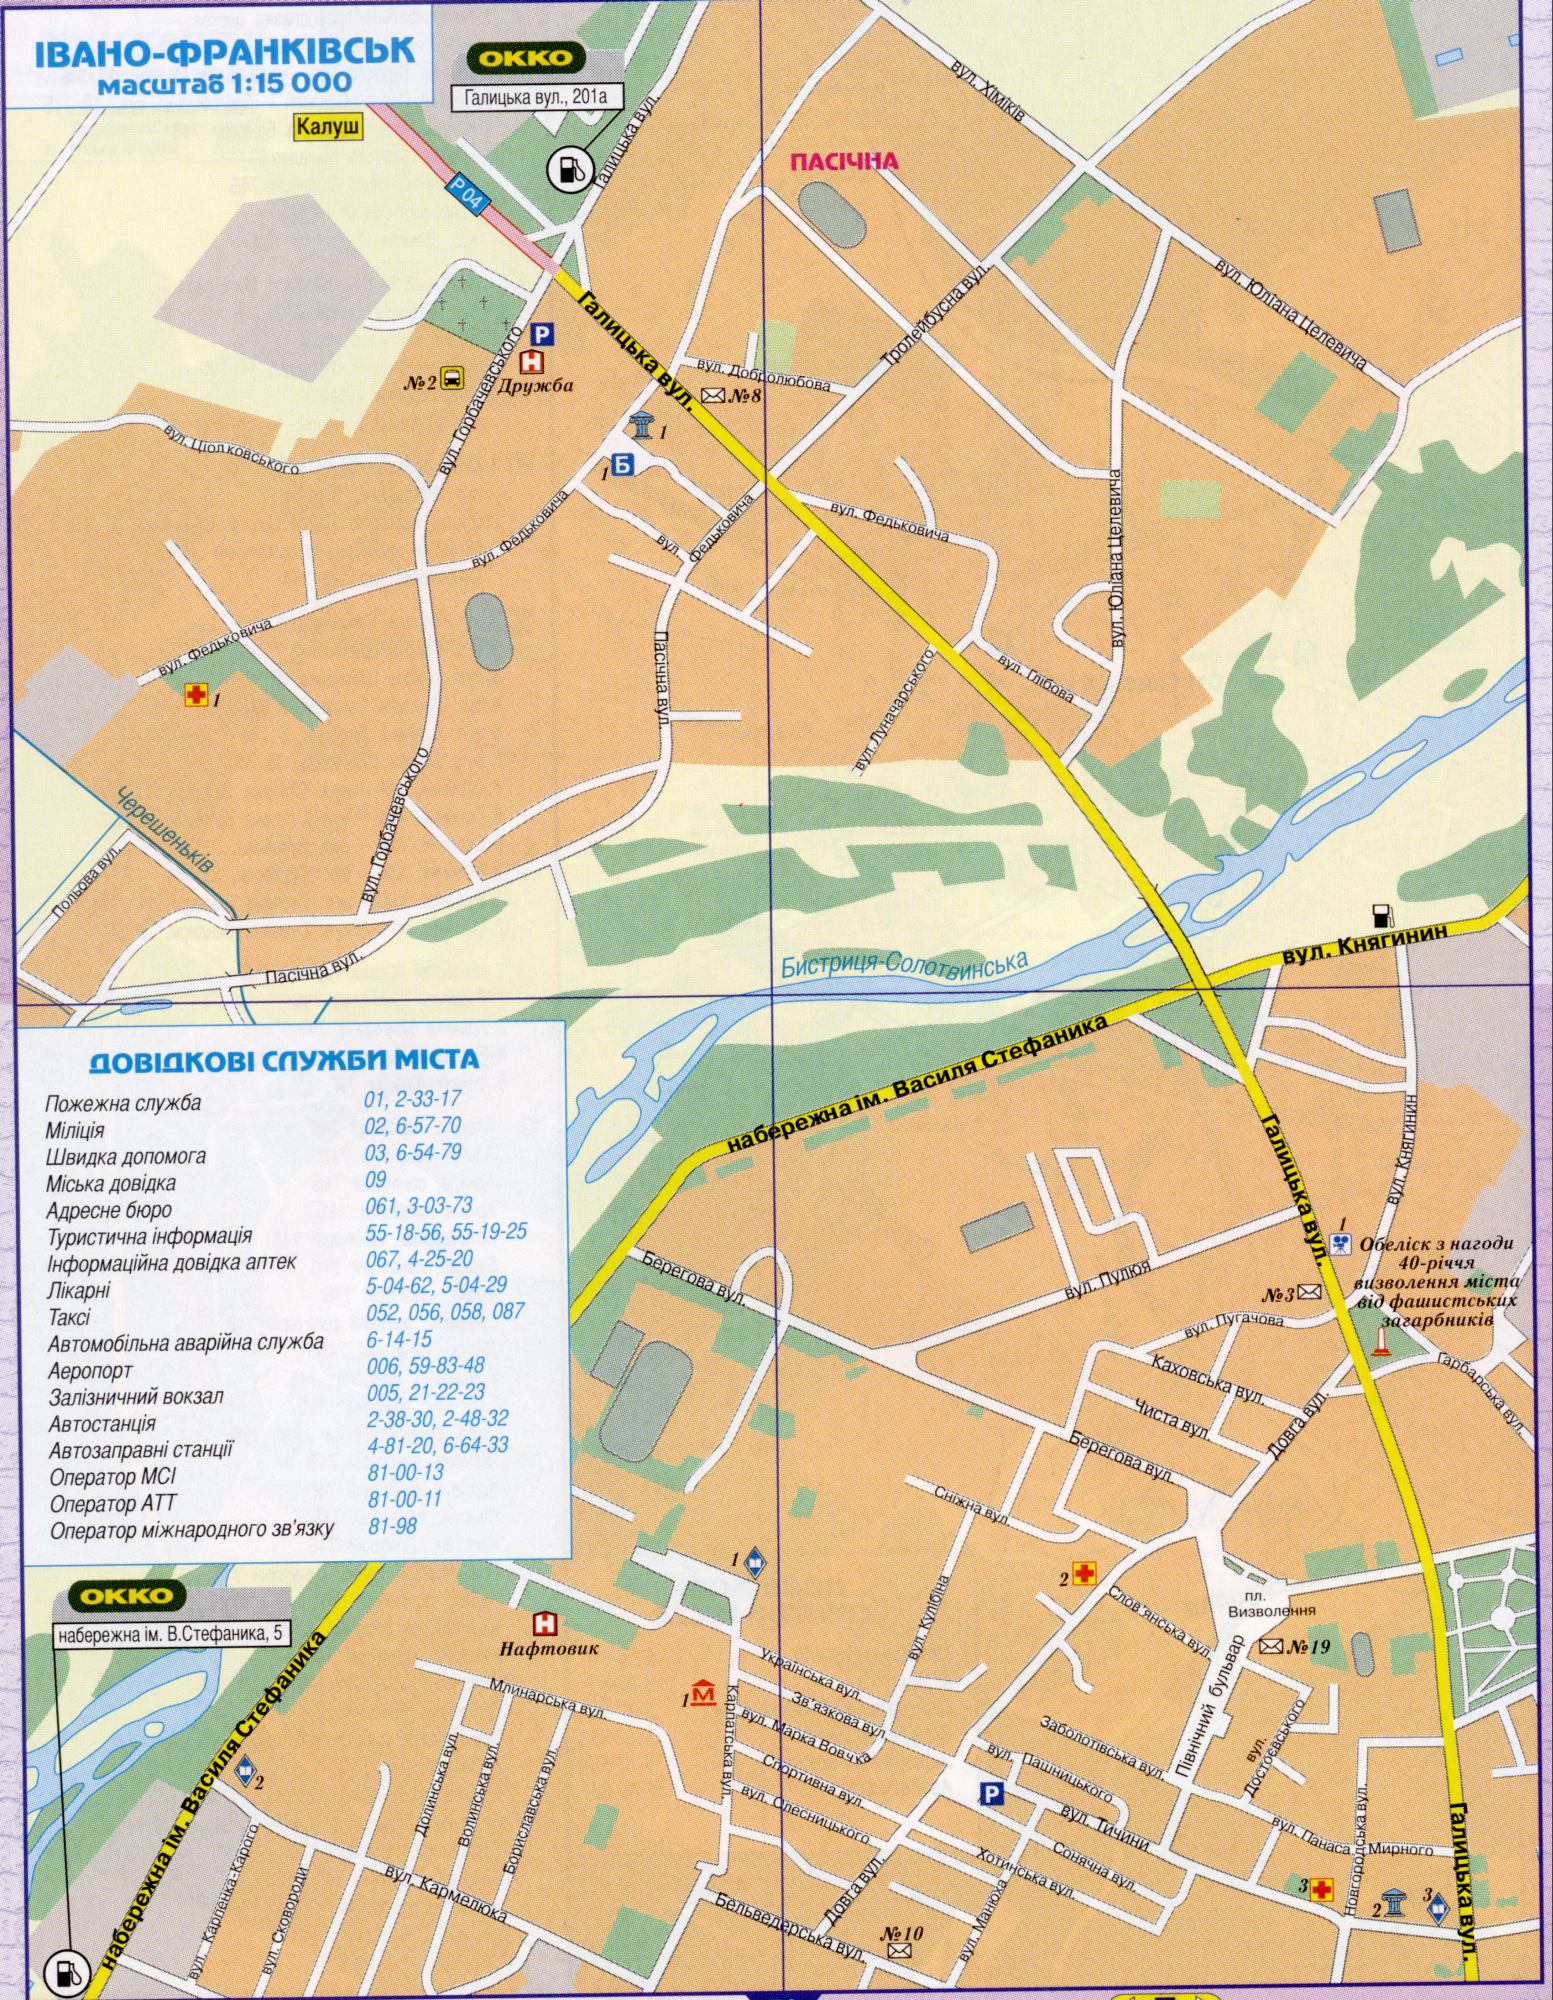 Plan de Ivano-Frankivsk, un plan détaillé de la ville de Ivano-Frankivsk échelle 1cm-150metrov. télécharger